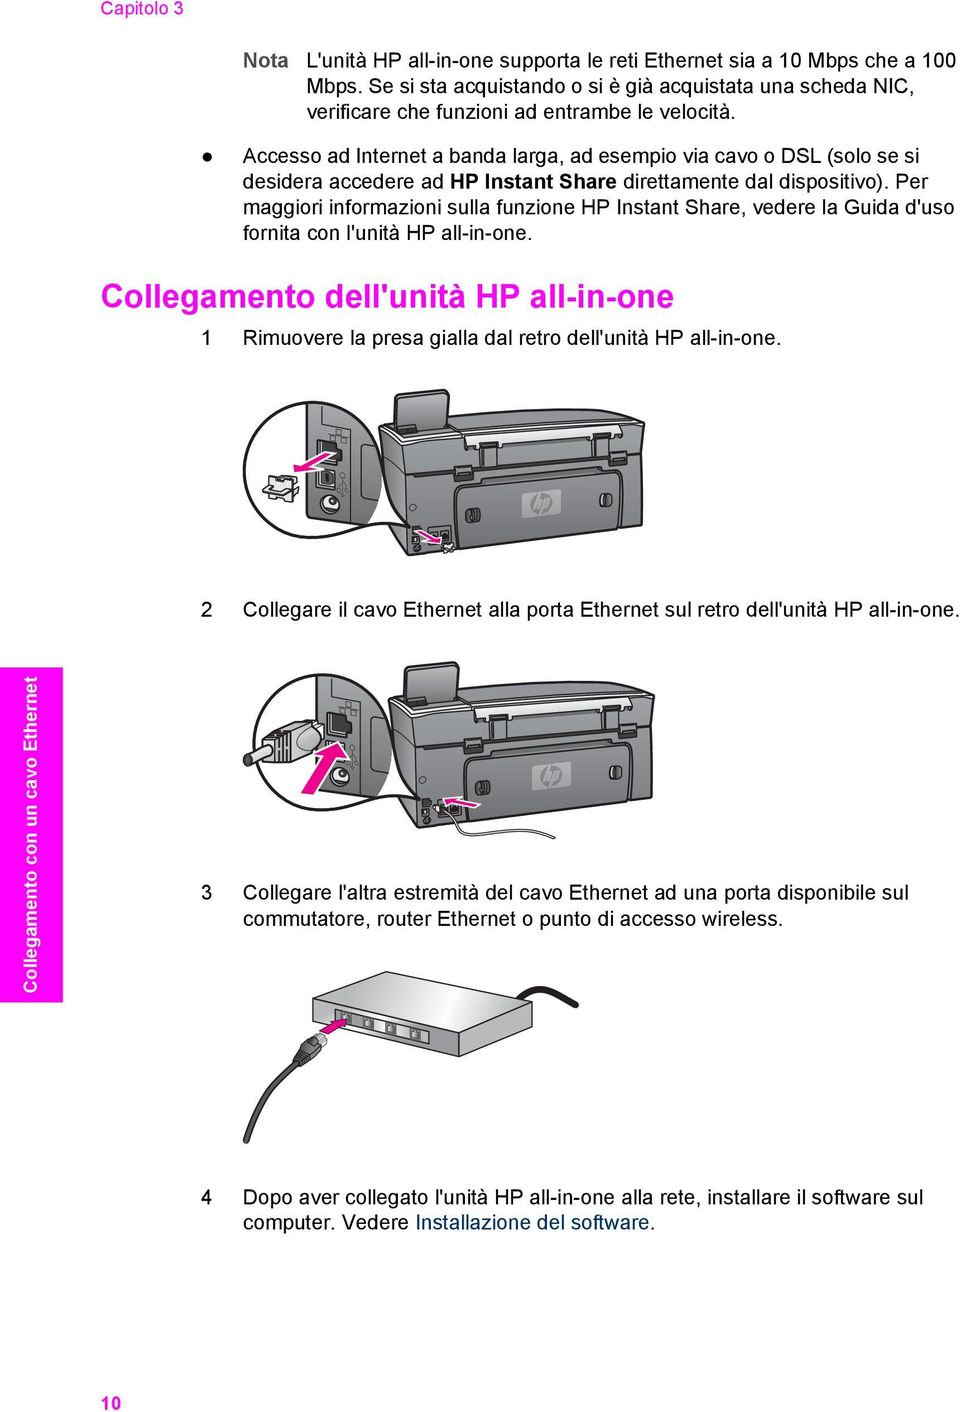 Accesso ad Internet a banda larga, ad esempio via cavo o DSL (solo se si desidera accedere ad HP Instant Share direttamente dal dispositivo).